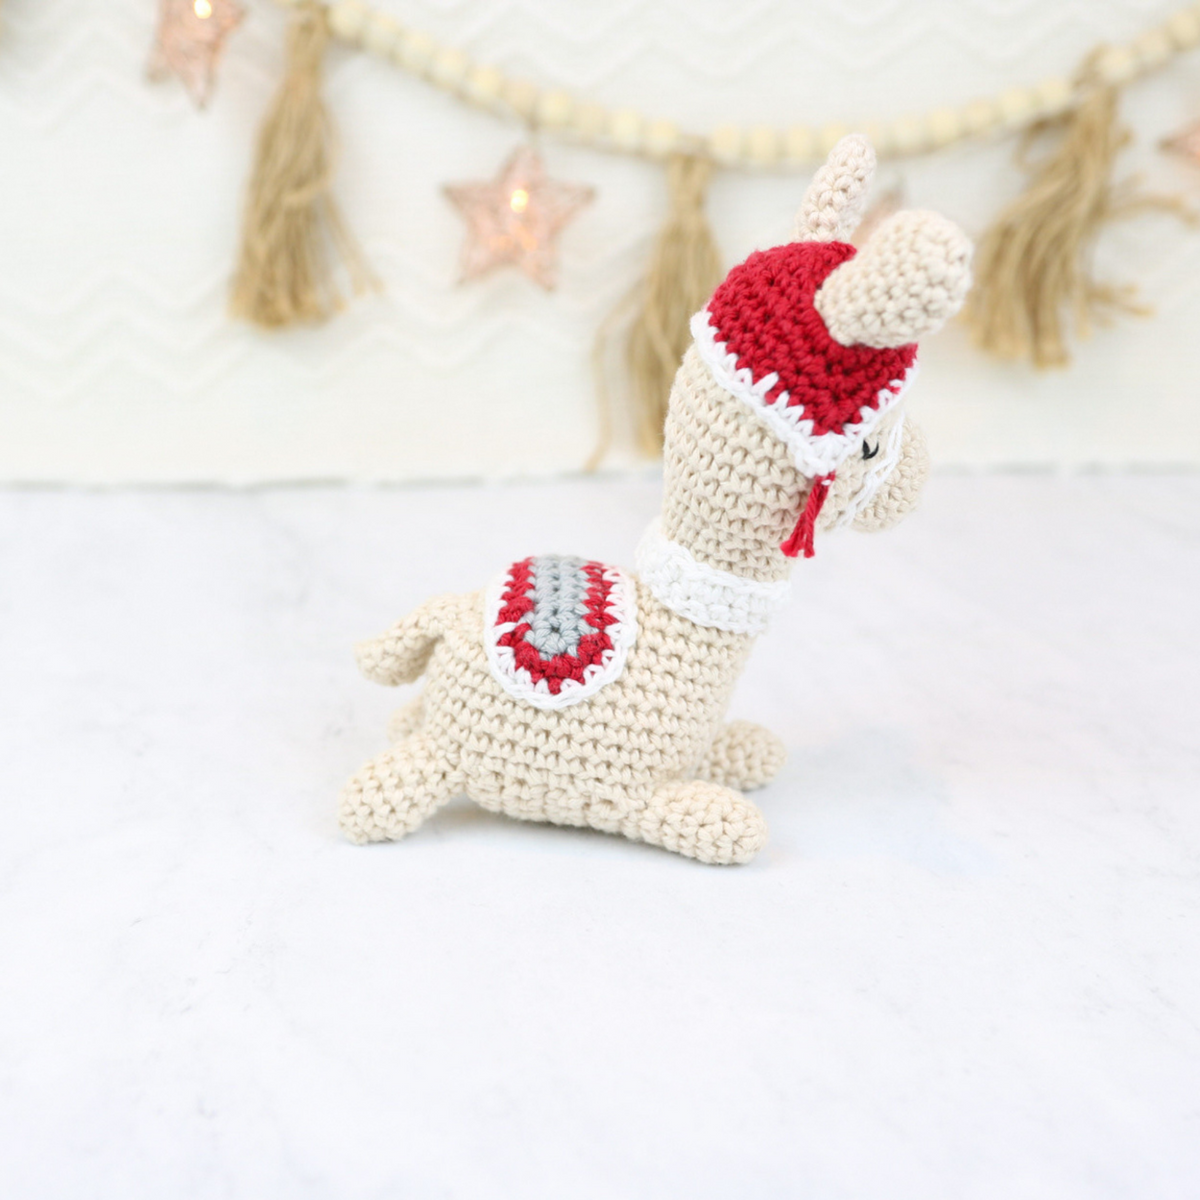 Machi the Llama Dog Crochet Toy